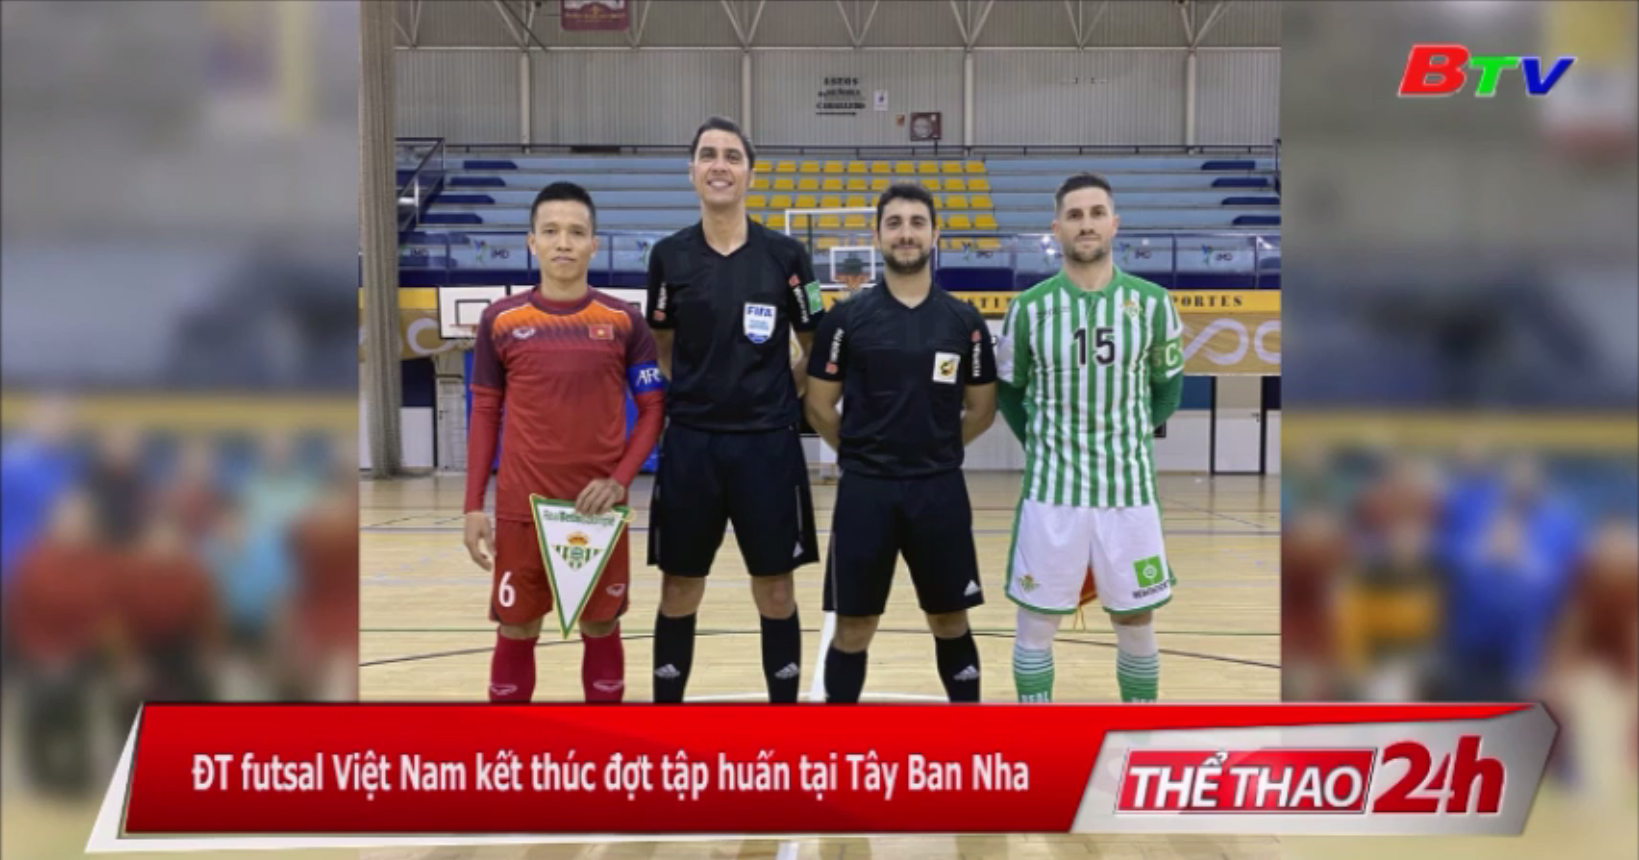 ĐT futsal Việt Nam kết thúc đợt tập huấn tại Tây Ban Nha